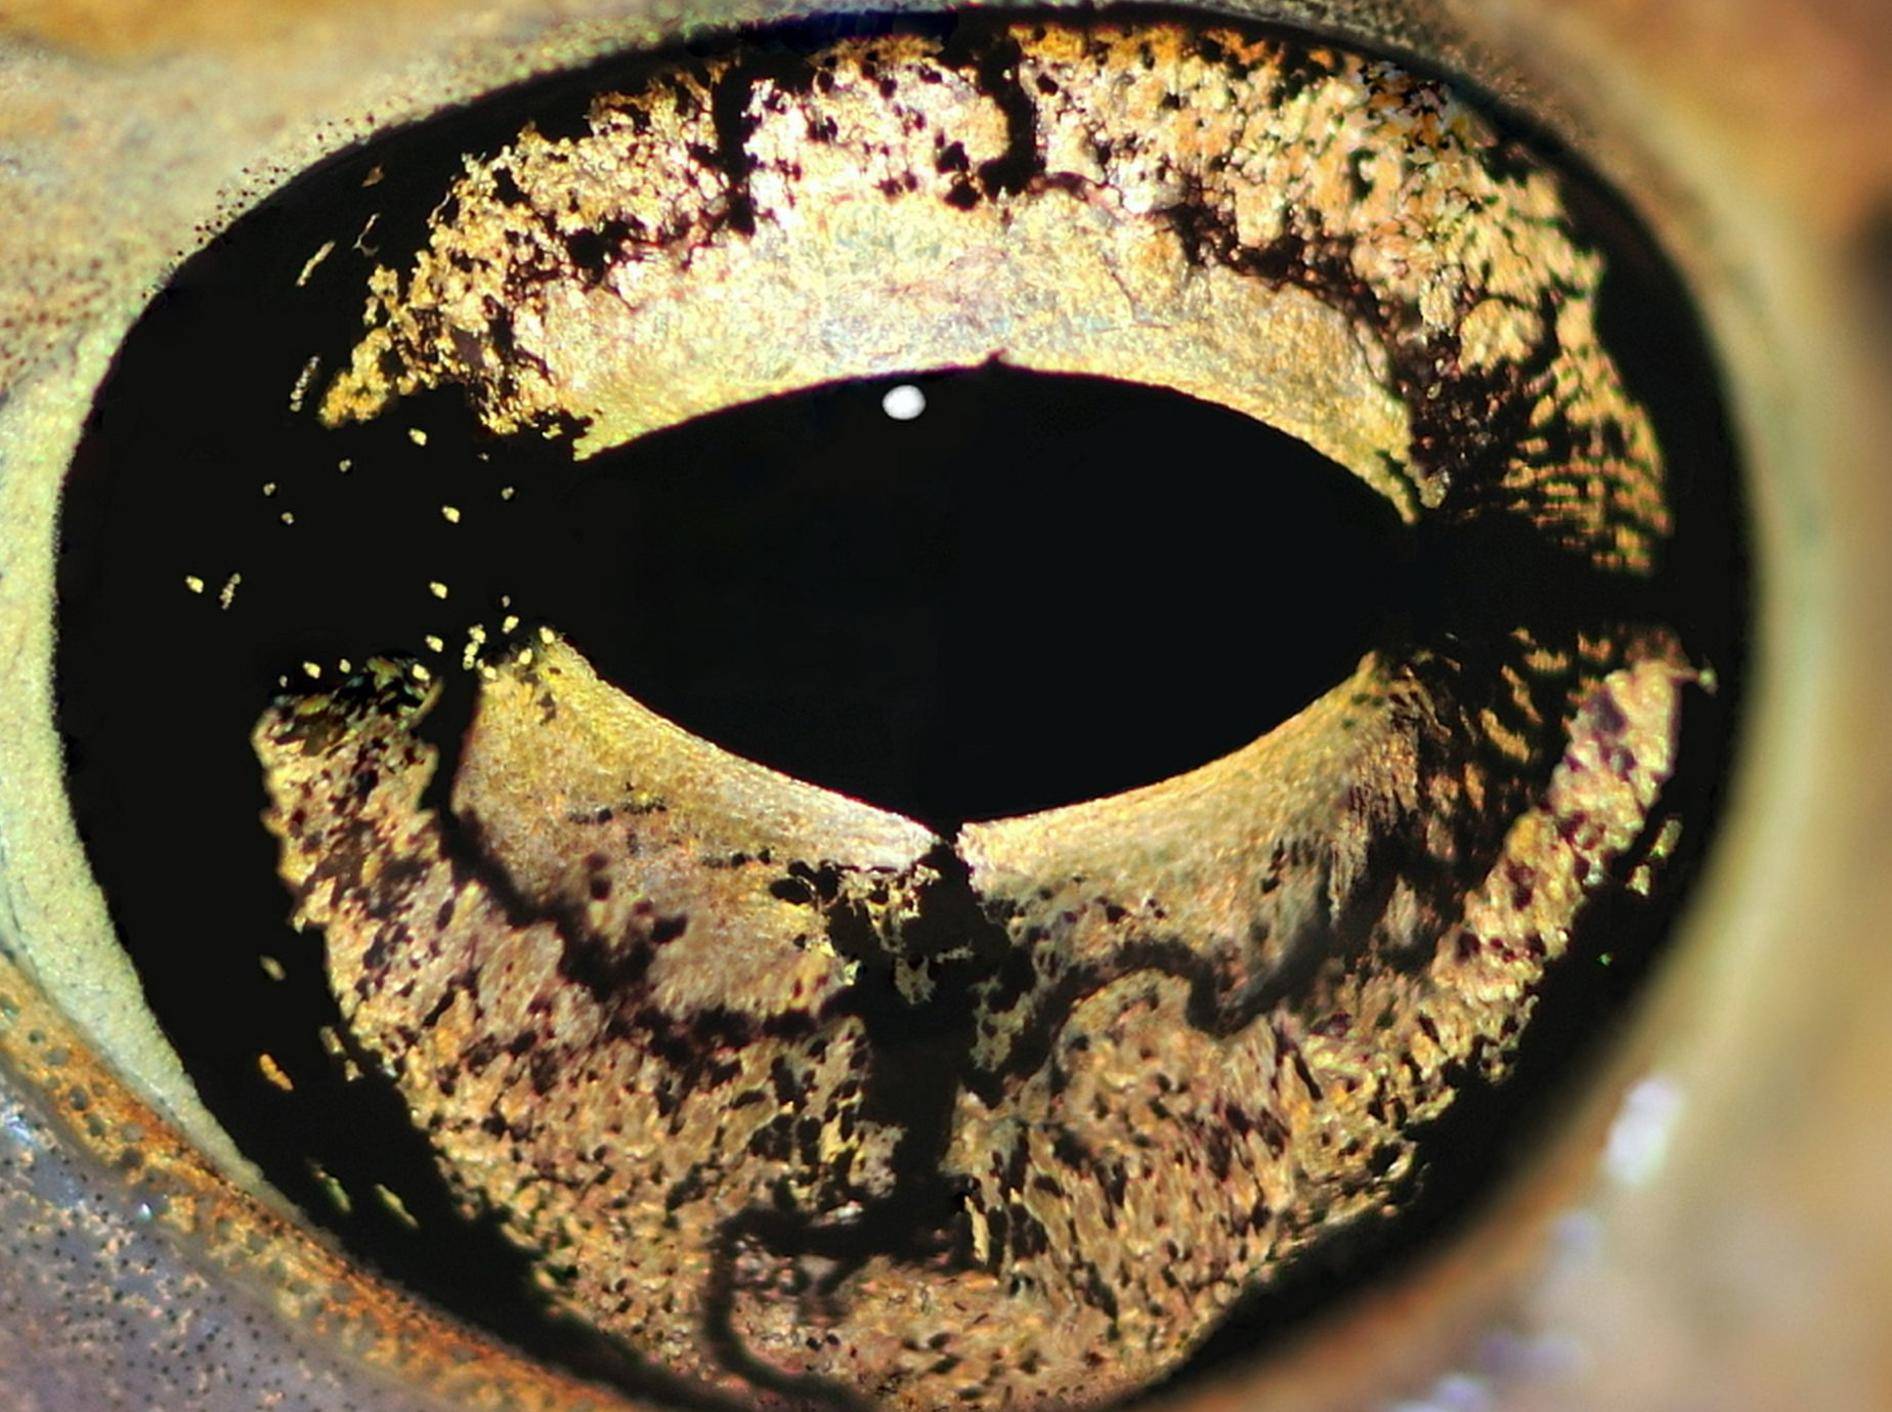 Gold gemustert und wunderschön: Welchem Tier gehört dieses Auge? — Bild: Shutterstock / StevenRussellSmithPhotos